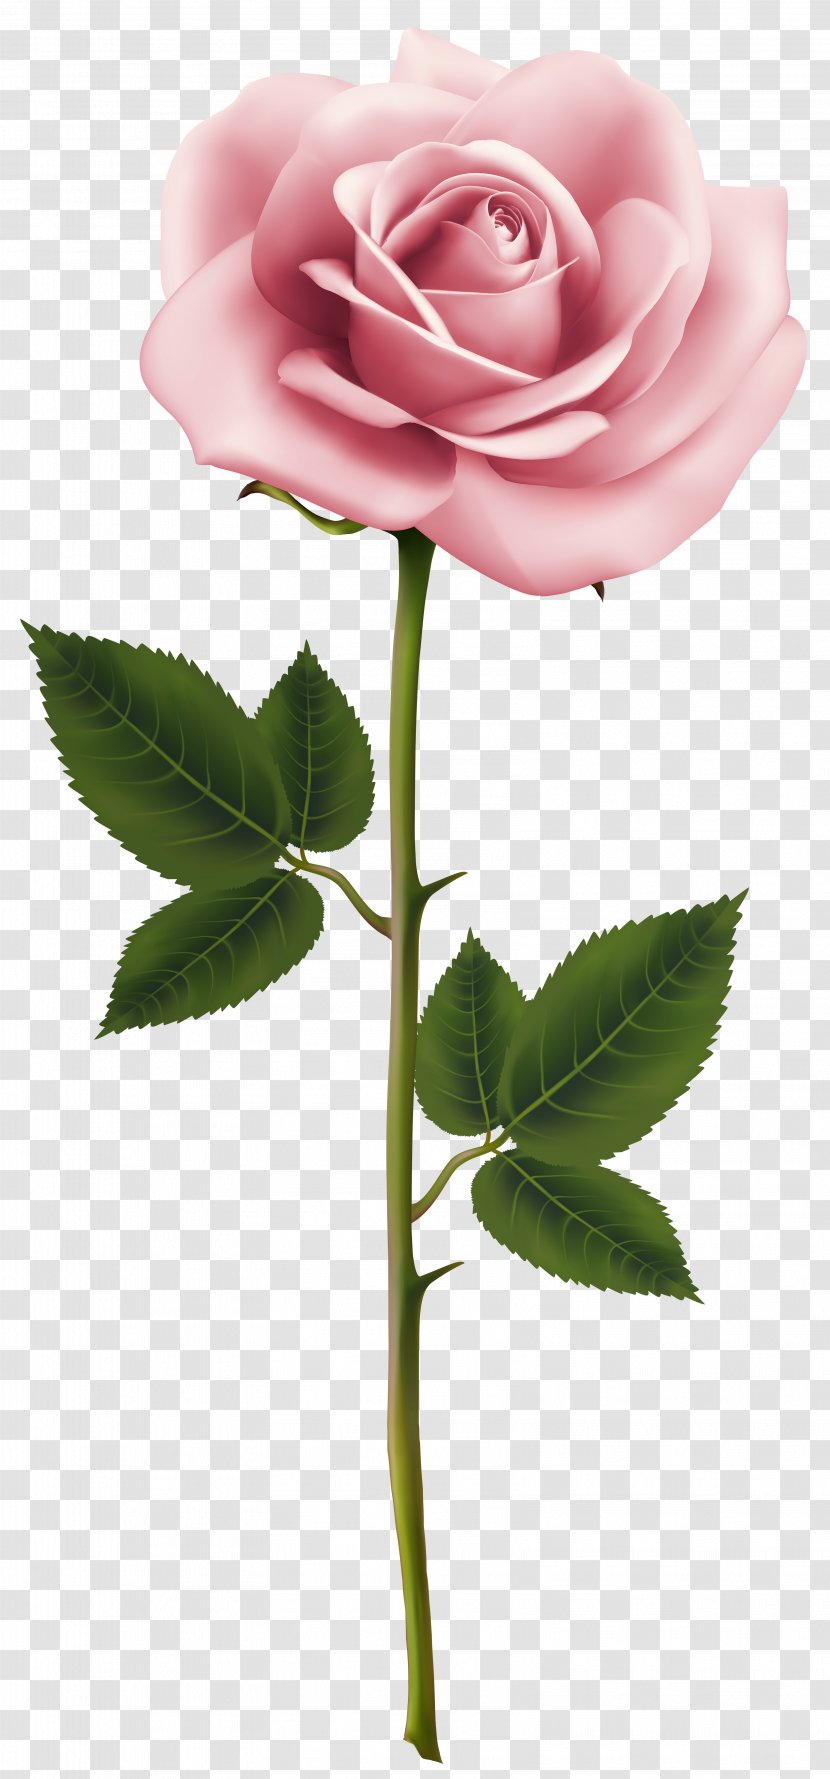 Rose Pink Flower Clip Art - Plant - Image Transparent PNG